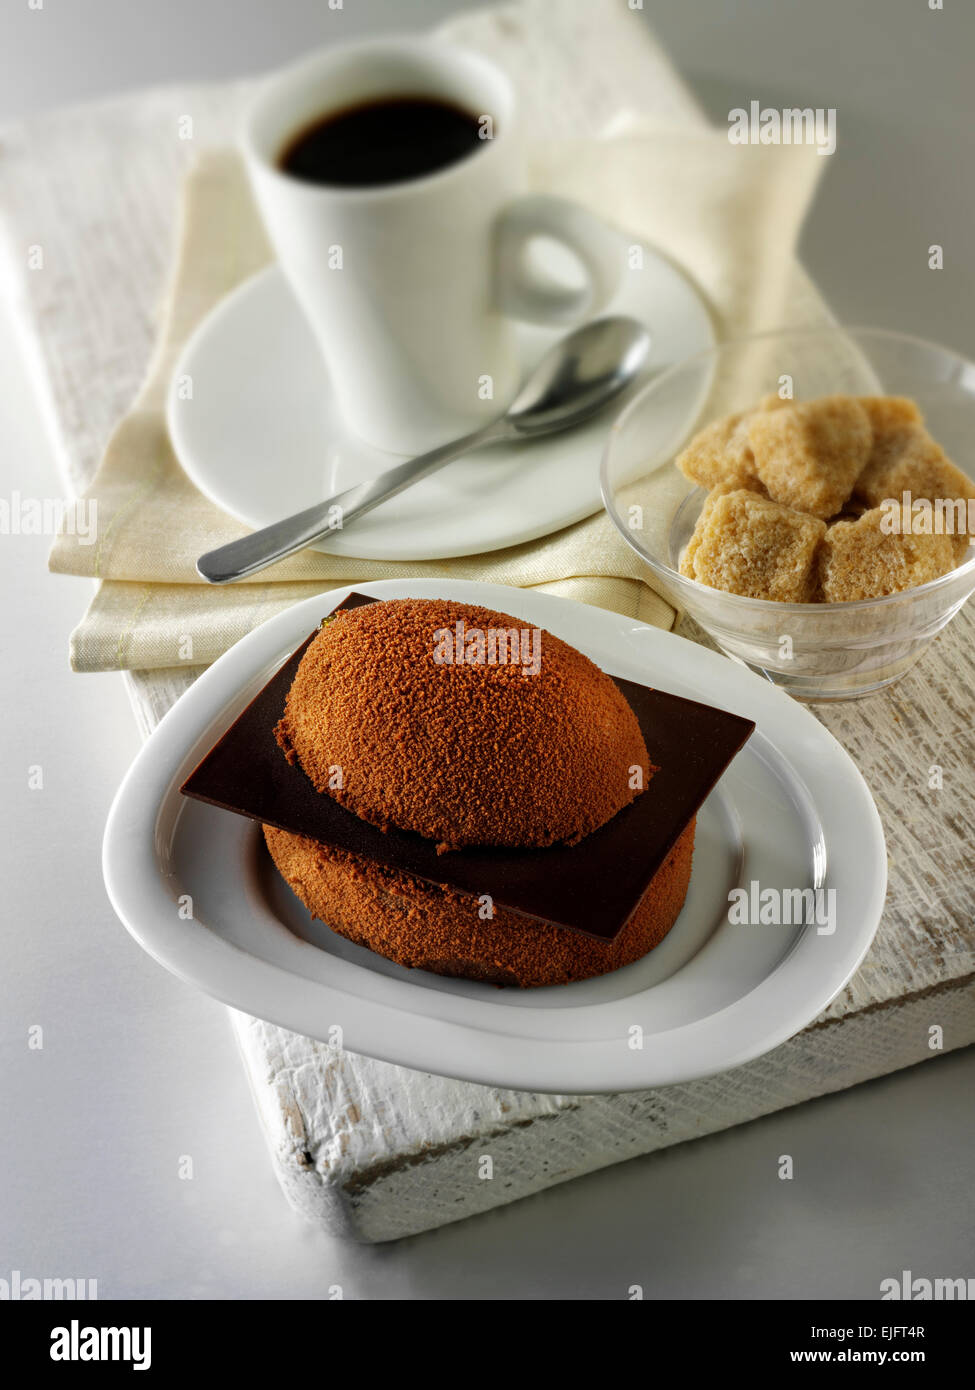 Schokoladenkuchen mit einem Schwamm Gehäuse und Schokofüllung, bedeckt mit Kakao-Pulver Stockfoto